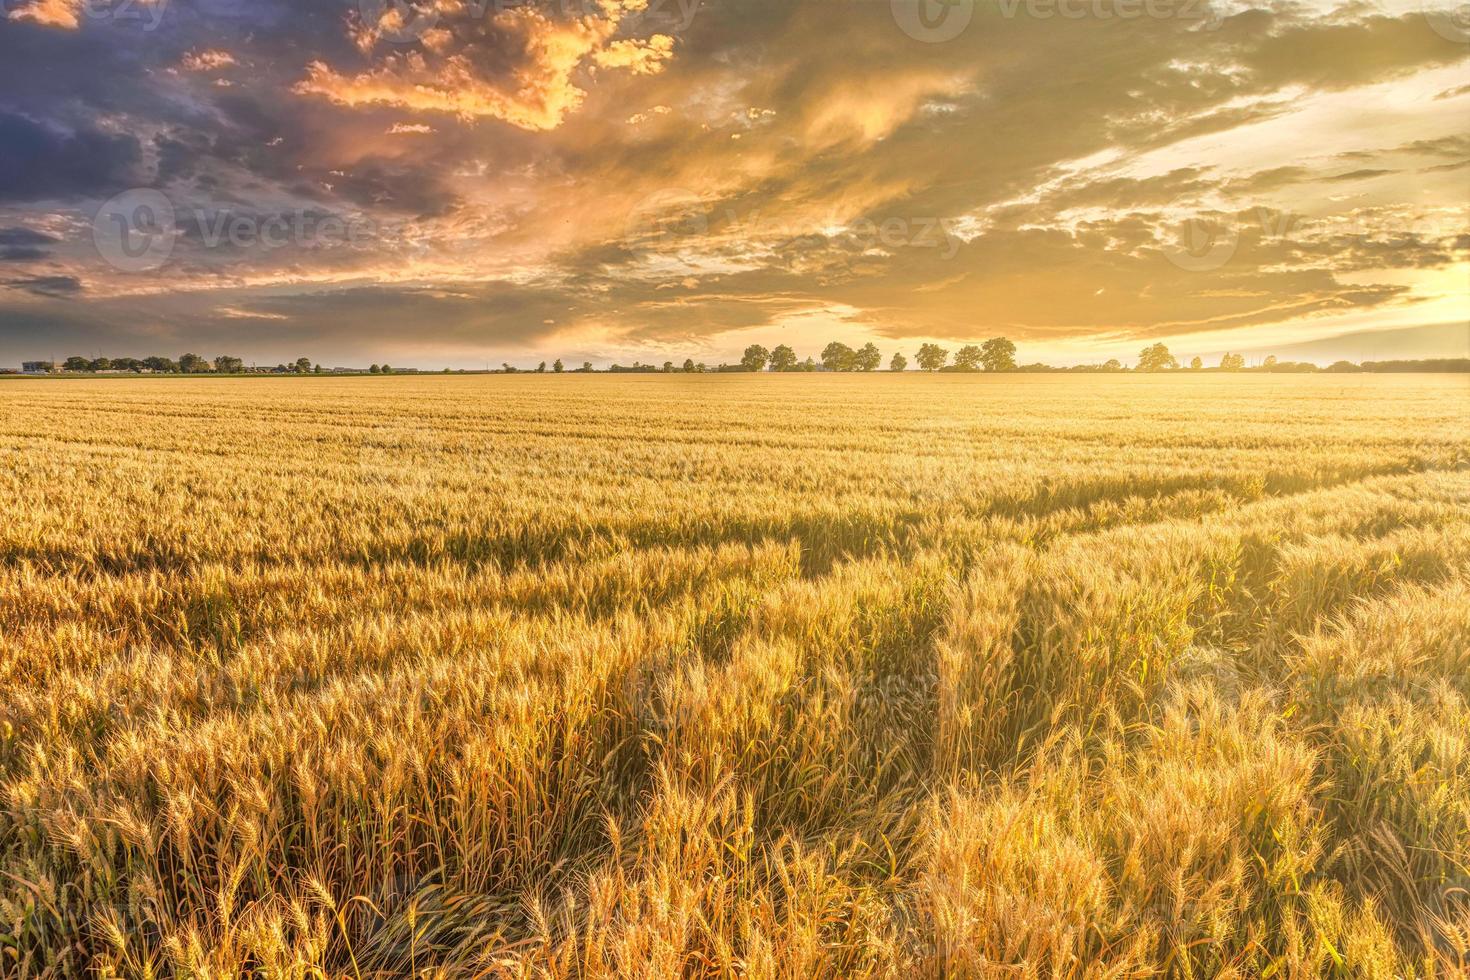 puesta de sol o amanecer en un campo de centeno con orejas doradas y un espectacular cielo nublado. campo de trigo agrícola bajo un cielo azul. rico tema de la cosecha. paisaje rural de otoño con trigo dorado maduro. foto